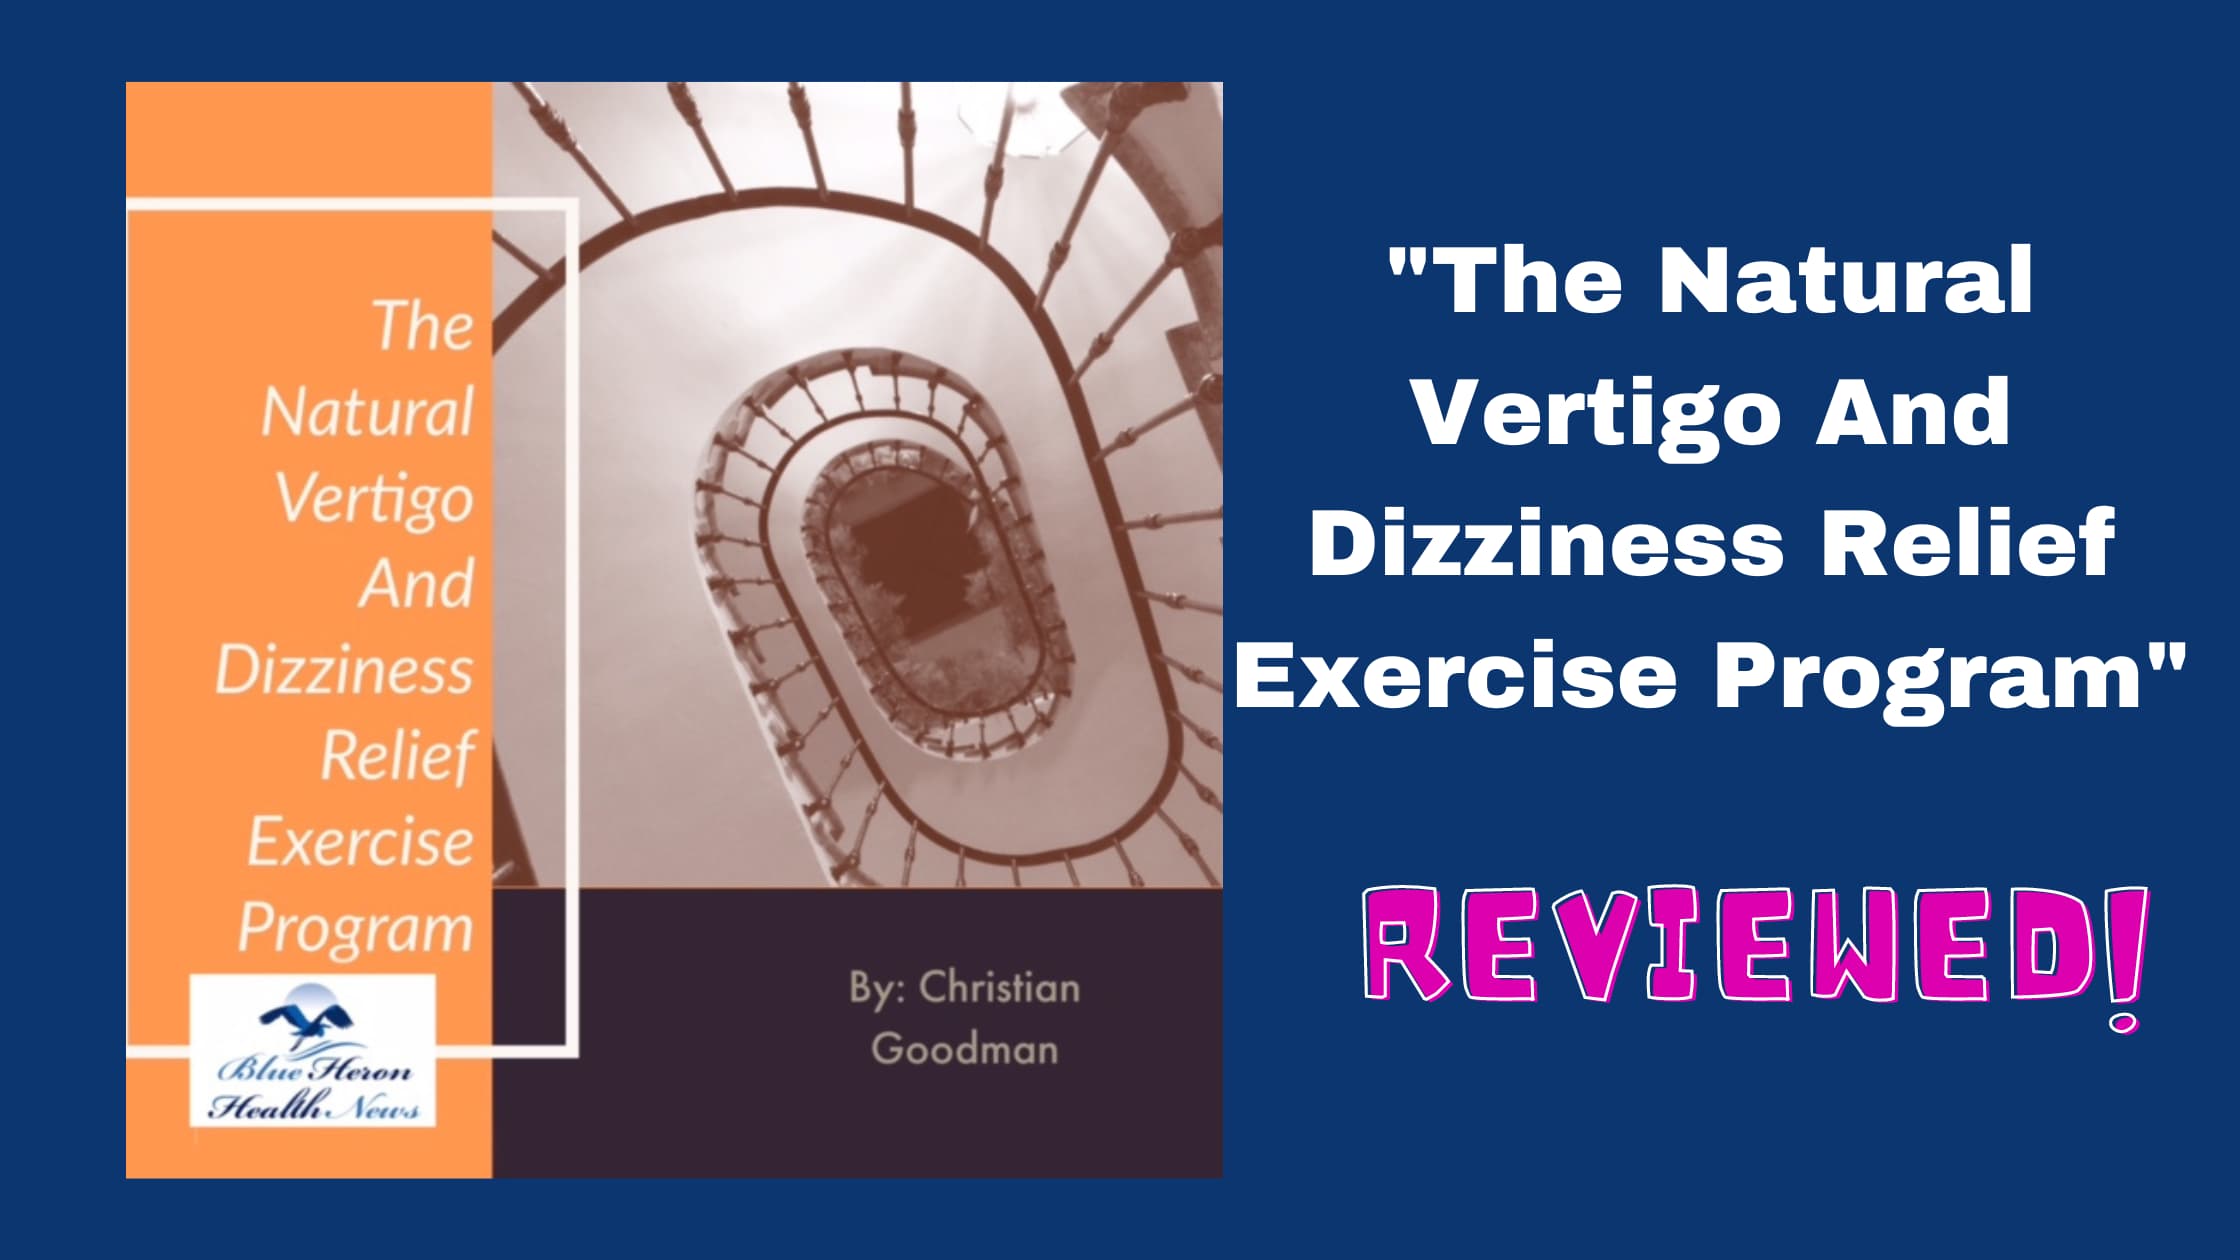 The Vertigo And Dizziness Program reviews